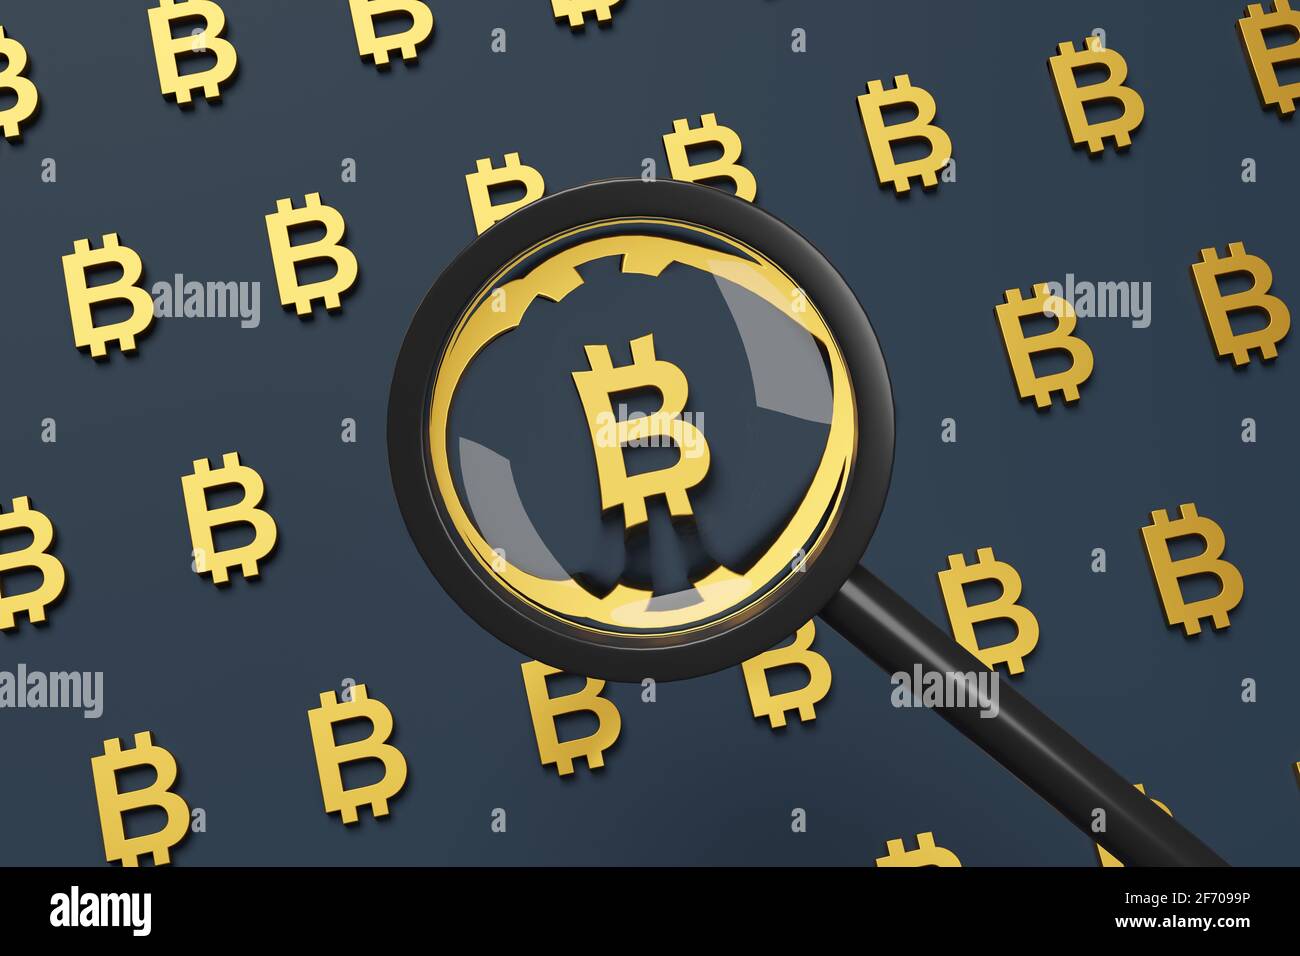 Signe Bitcoin vu à travers une loupe. illustration 3d. Banque D'Images